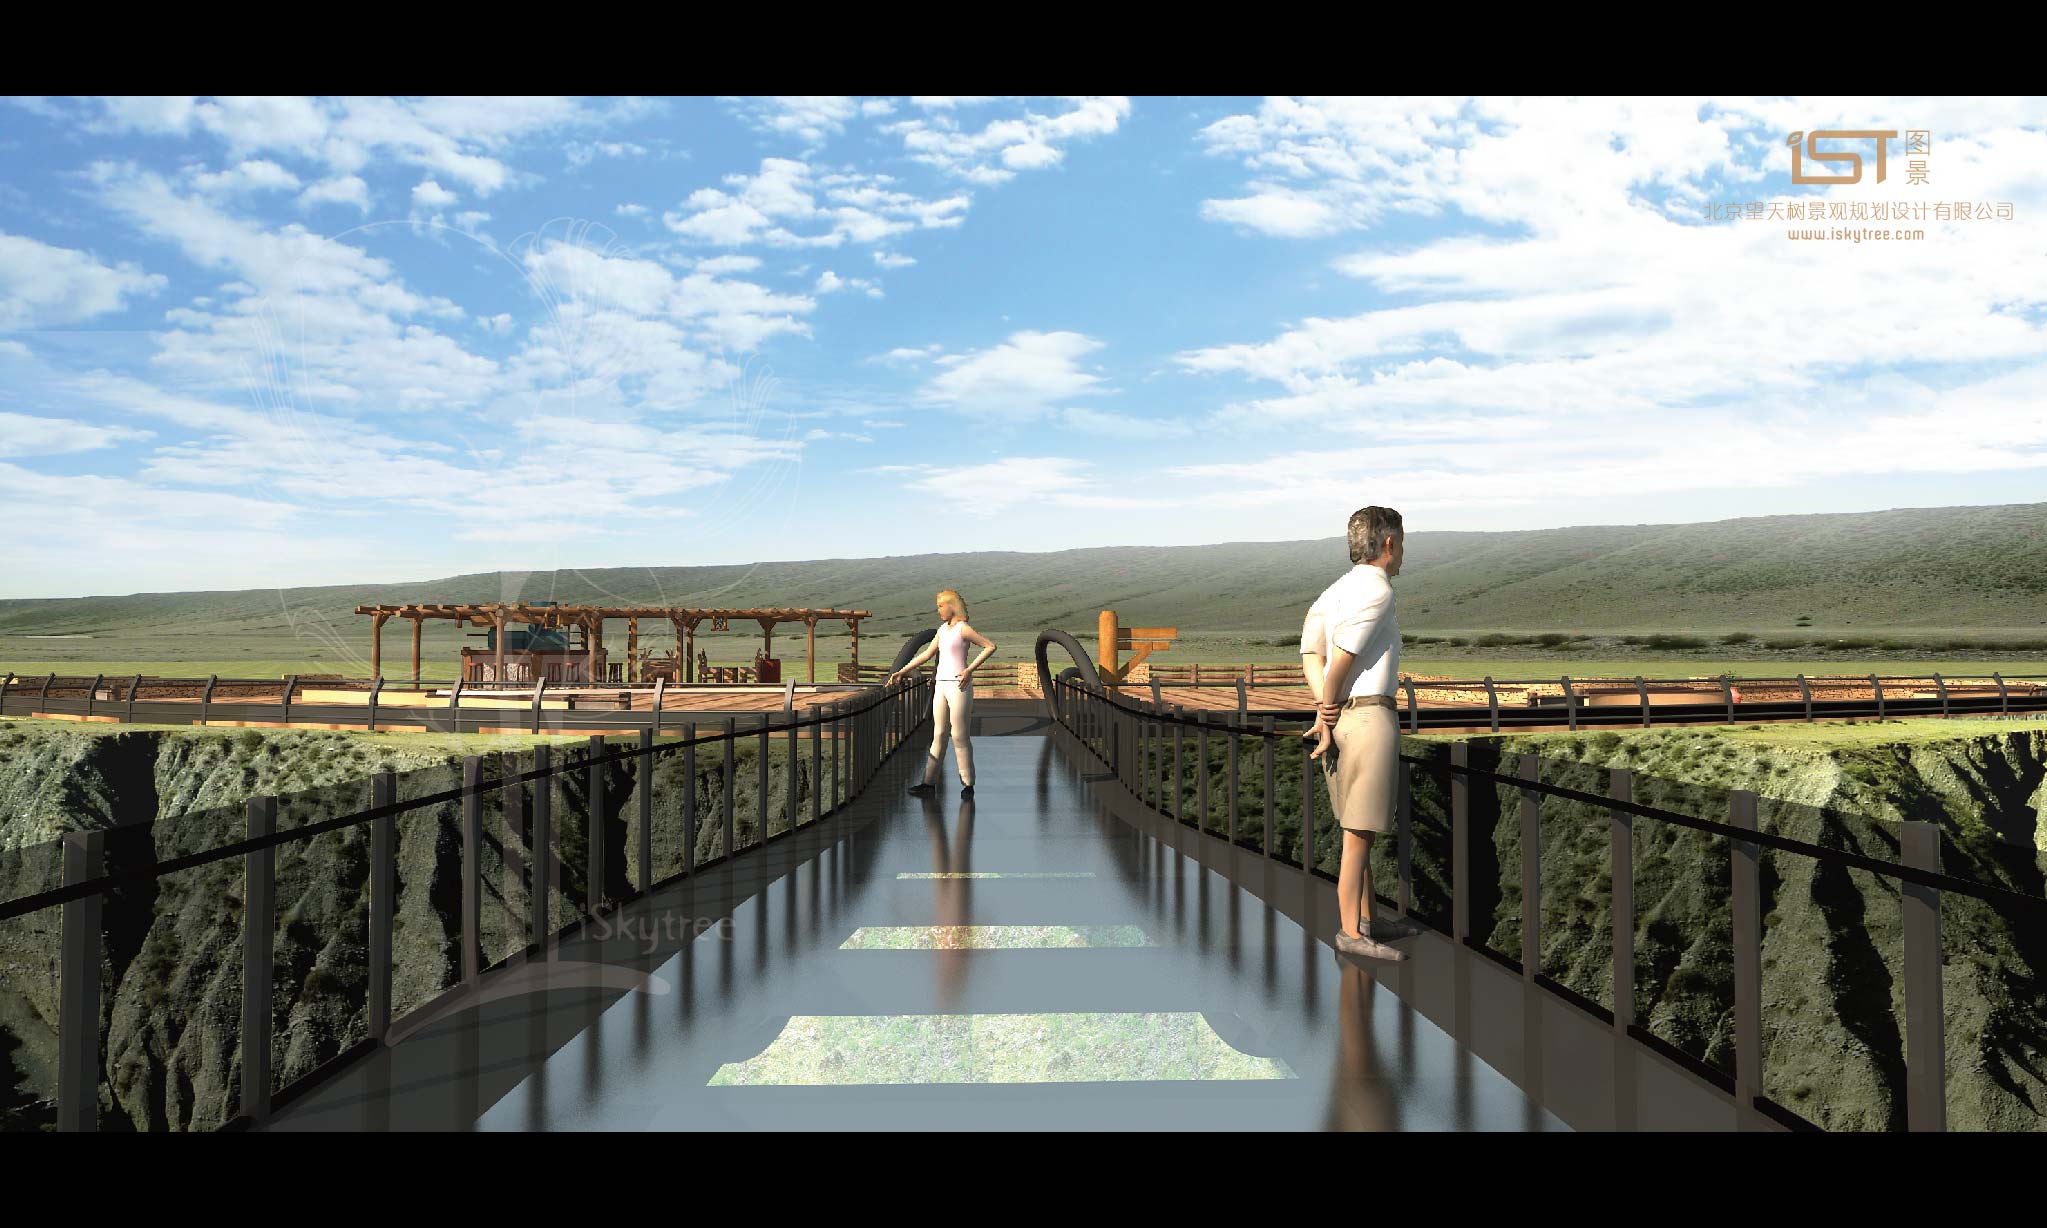 独山子大峡谷景区挑空长廊与观景平台设计方案效果表现